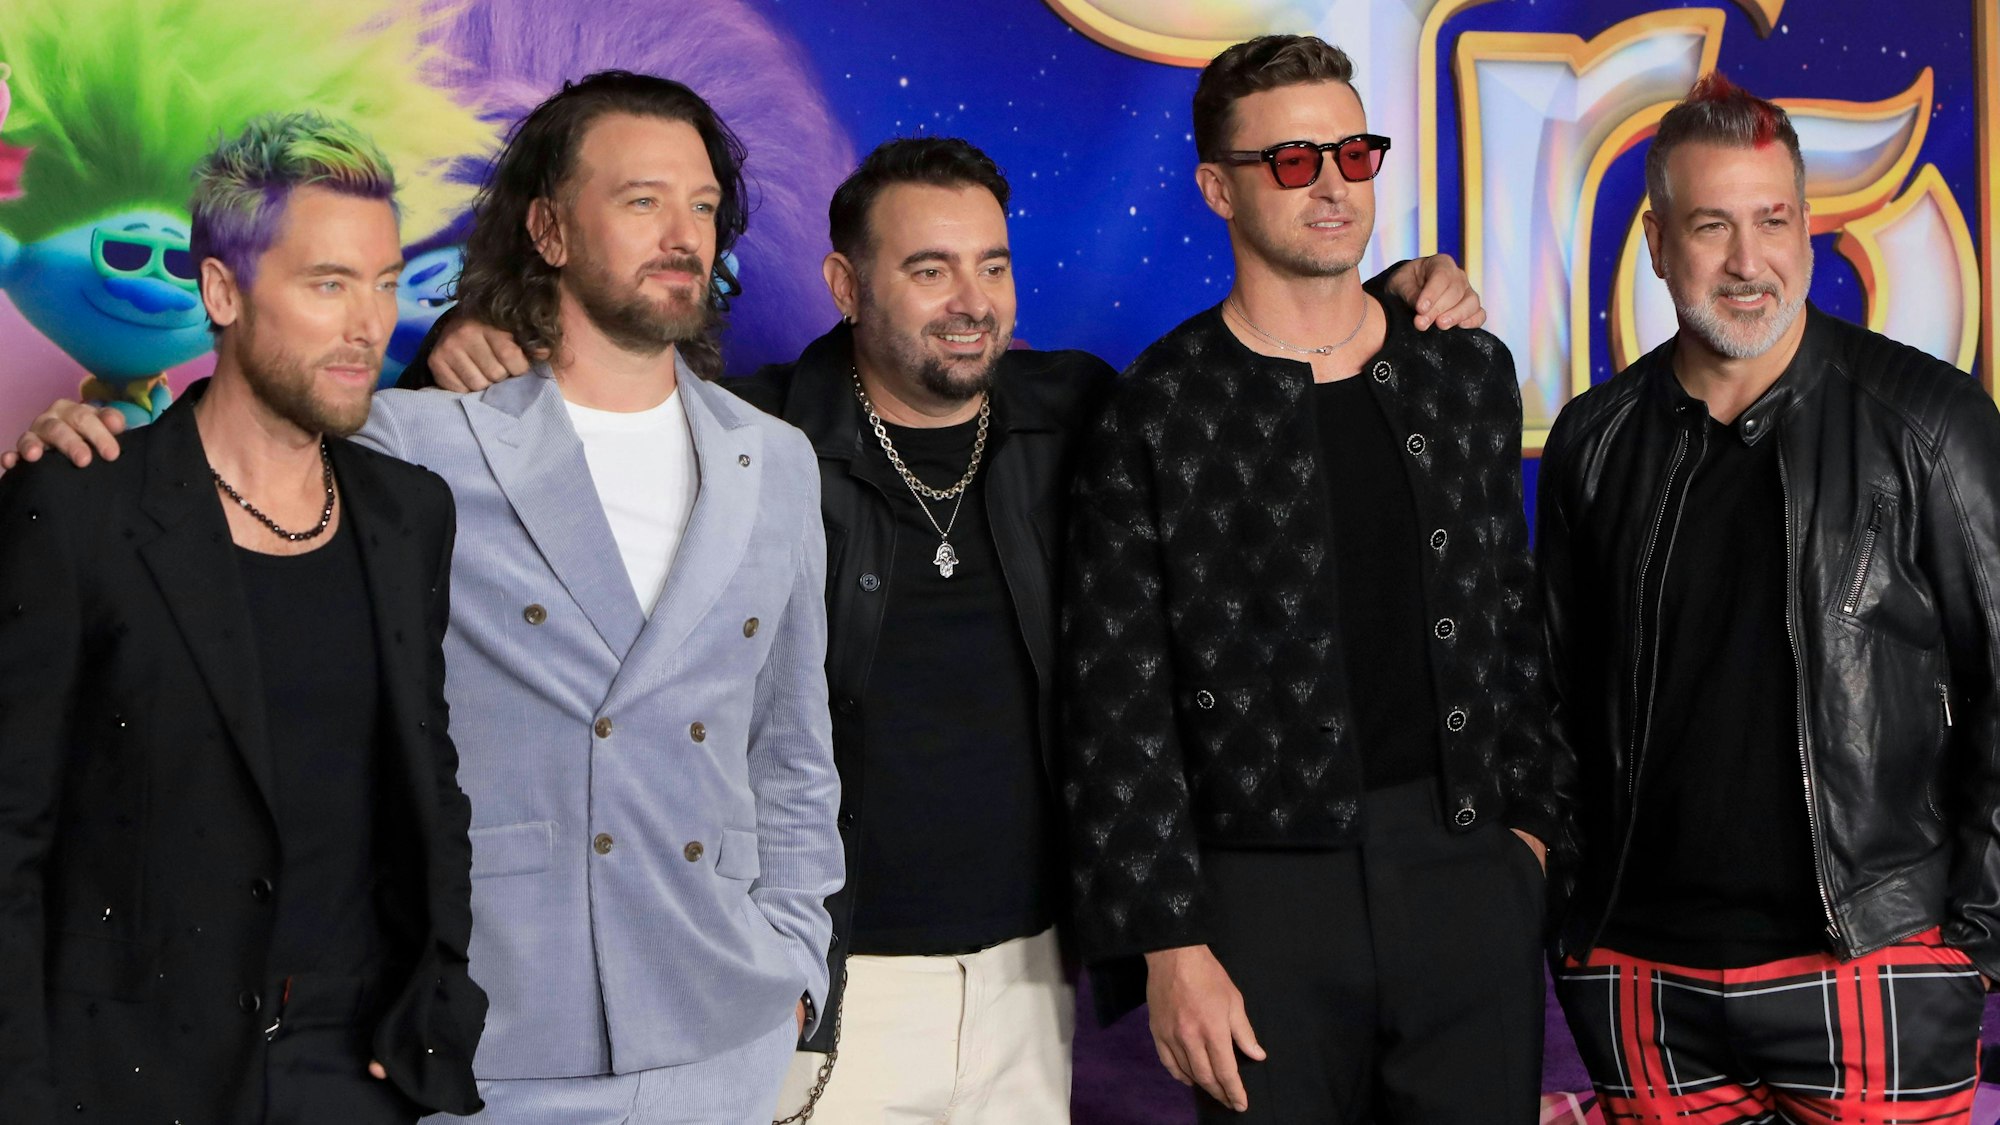 Lance Bass, JC Chasez, Chris Kirkpatrick, Justin Timberlake und Joey Fatone posieren auf dem roten Teppich.